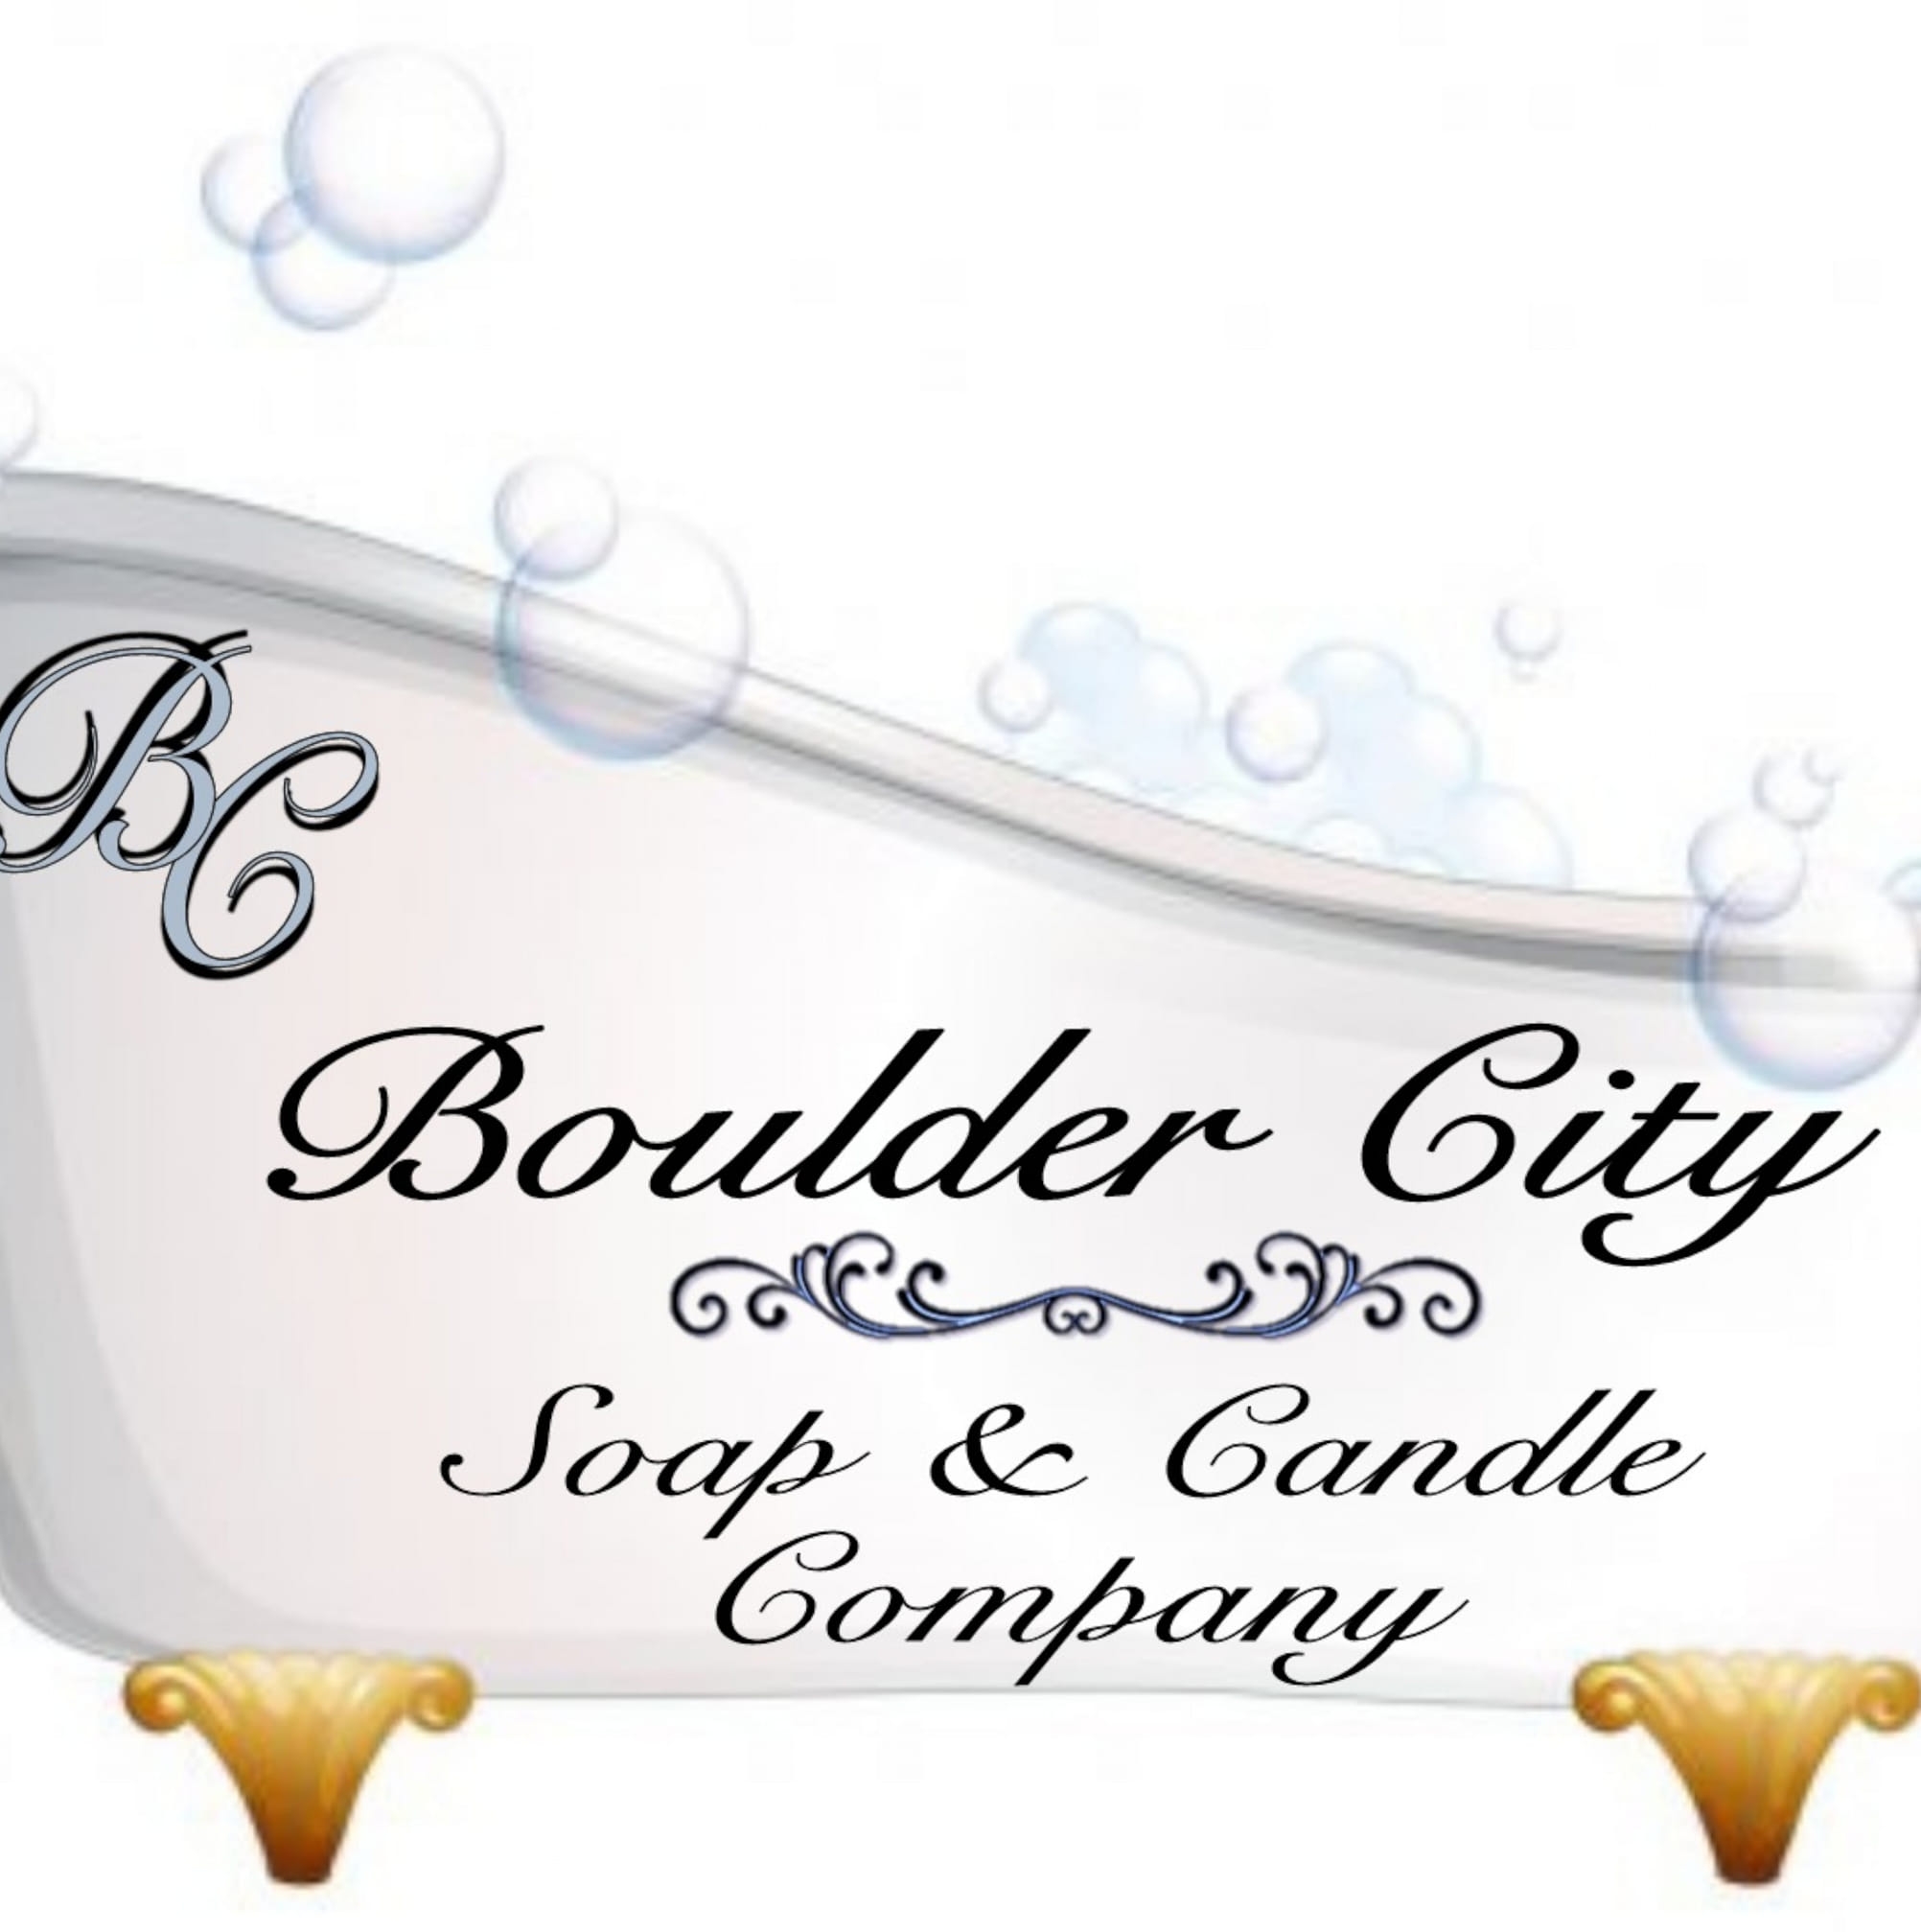 Boulder City Soap & Candle Co Logo